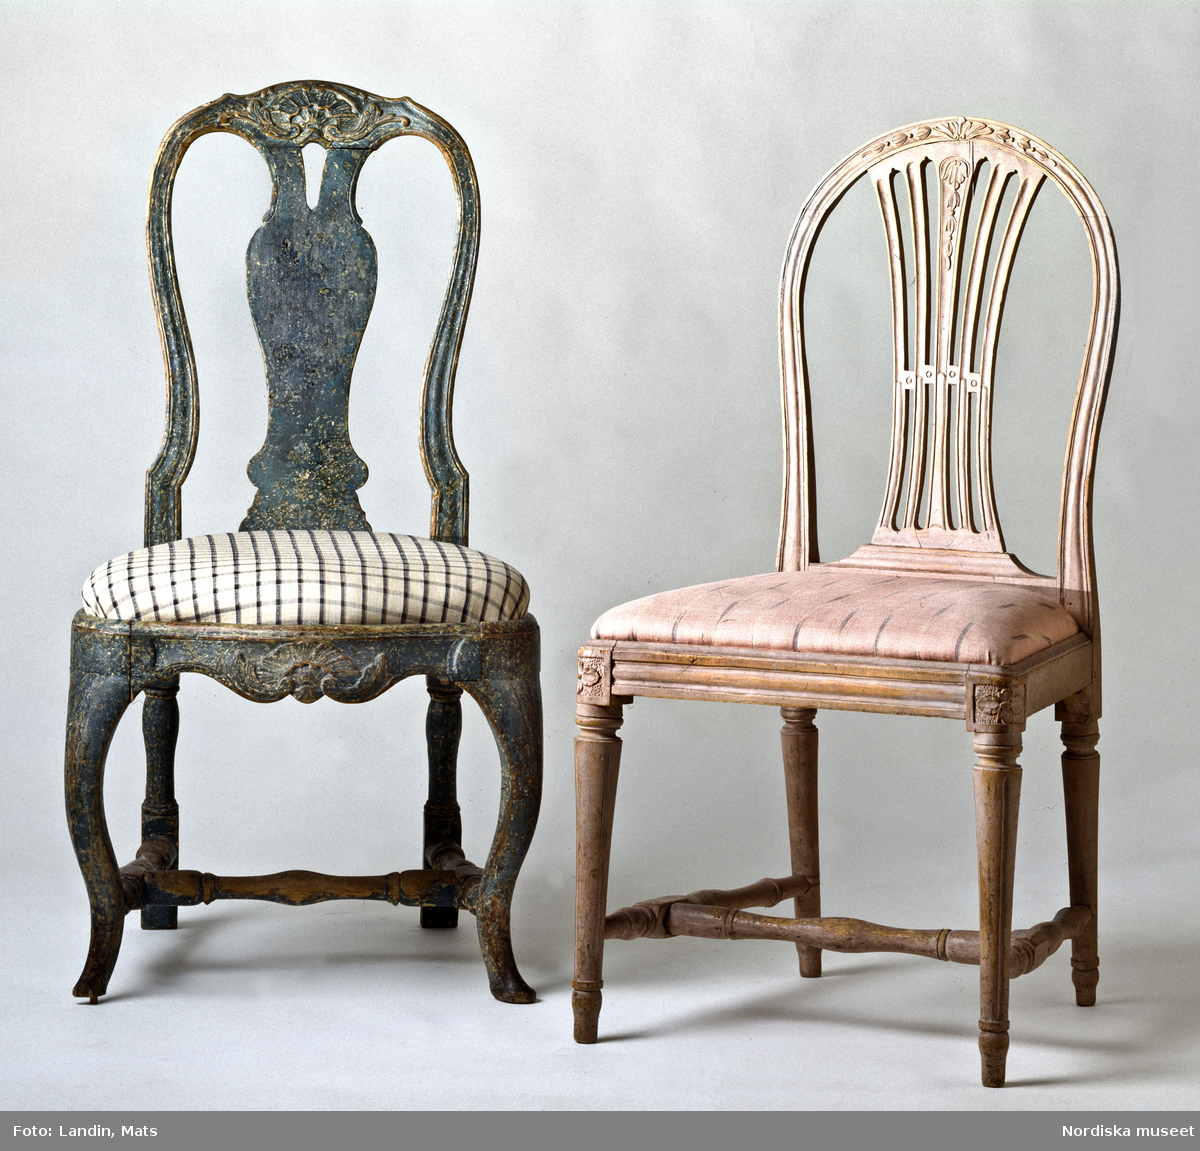 Två 1700-talsstolar. Till vänster den svenska rokokons elegantaste matsalsstol av engelsk typ, men med skulpterad dekor hämtad från den franska rokokon. Stolstypen har ofta kallats bondrokoko, en term som skapats inom antikhandeln. Den högra en stram sengustaviansk modell som influerats ev engelska stolar.